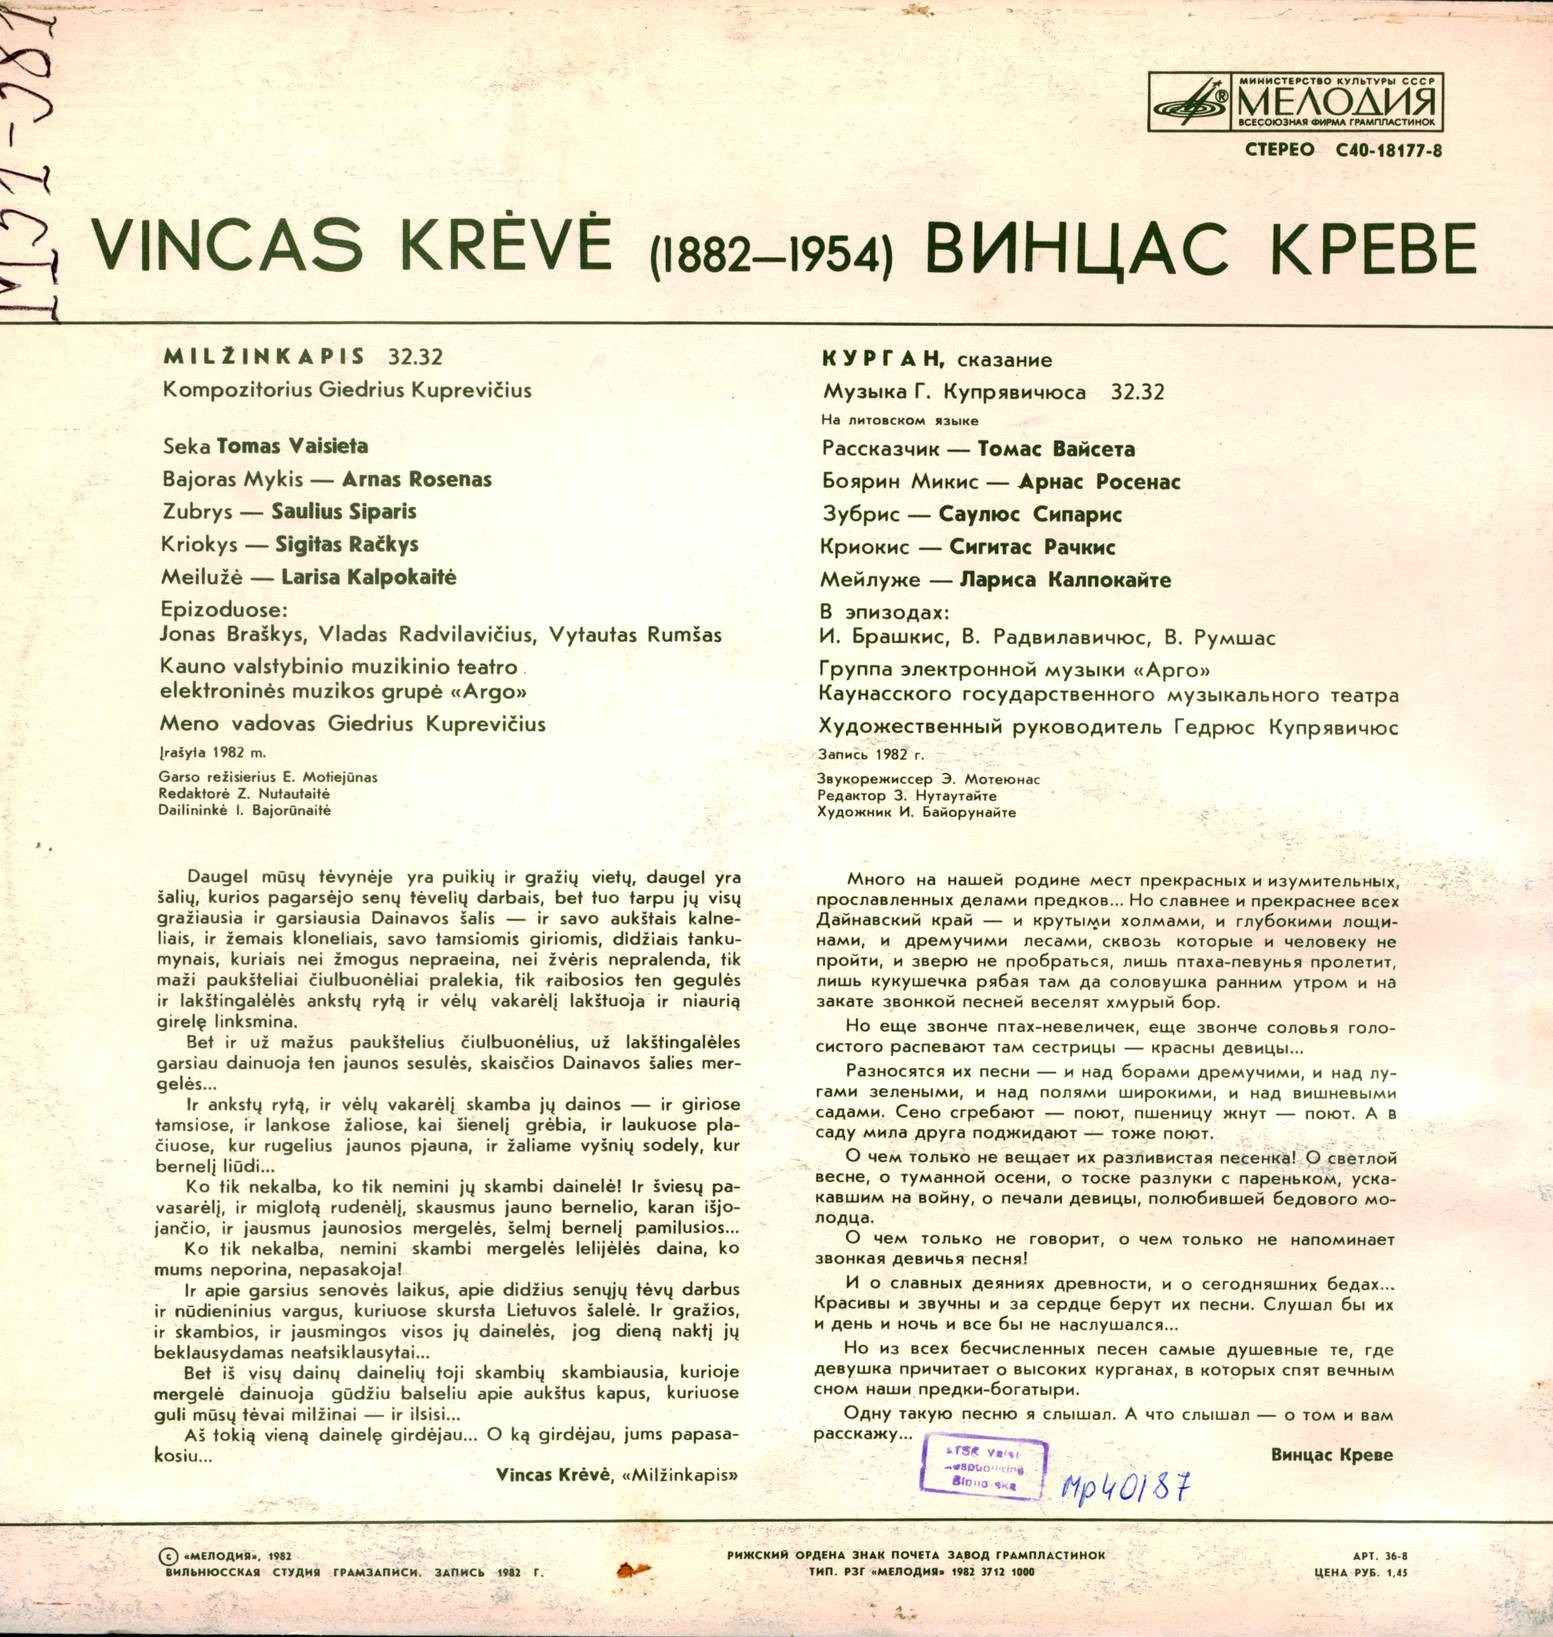 Винцас КРЕВЕ (1882-1954). «Курган», сказание. Музыка Г. Купрявичюса